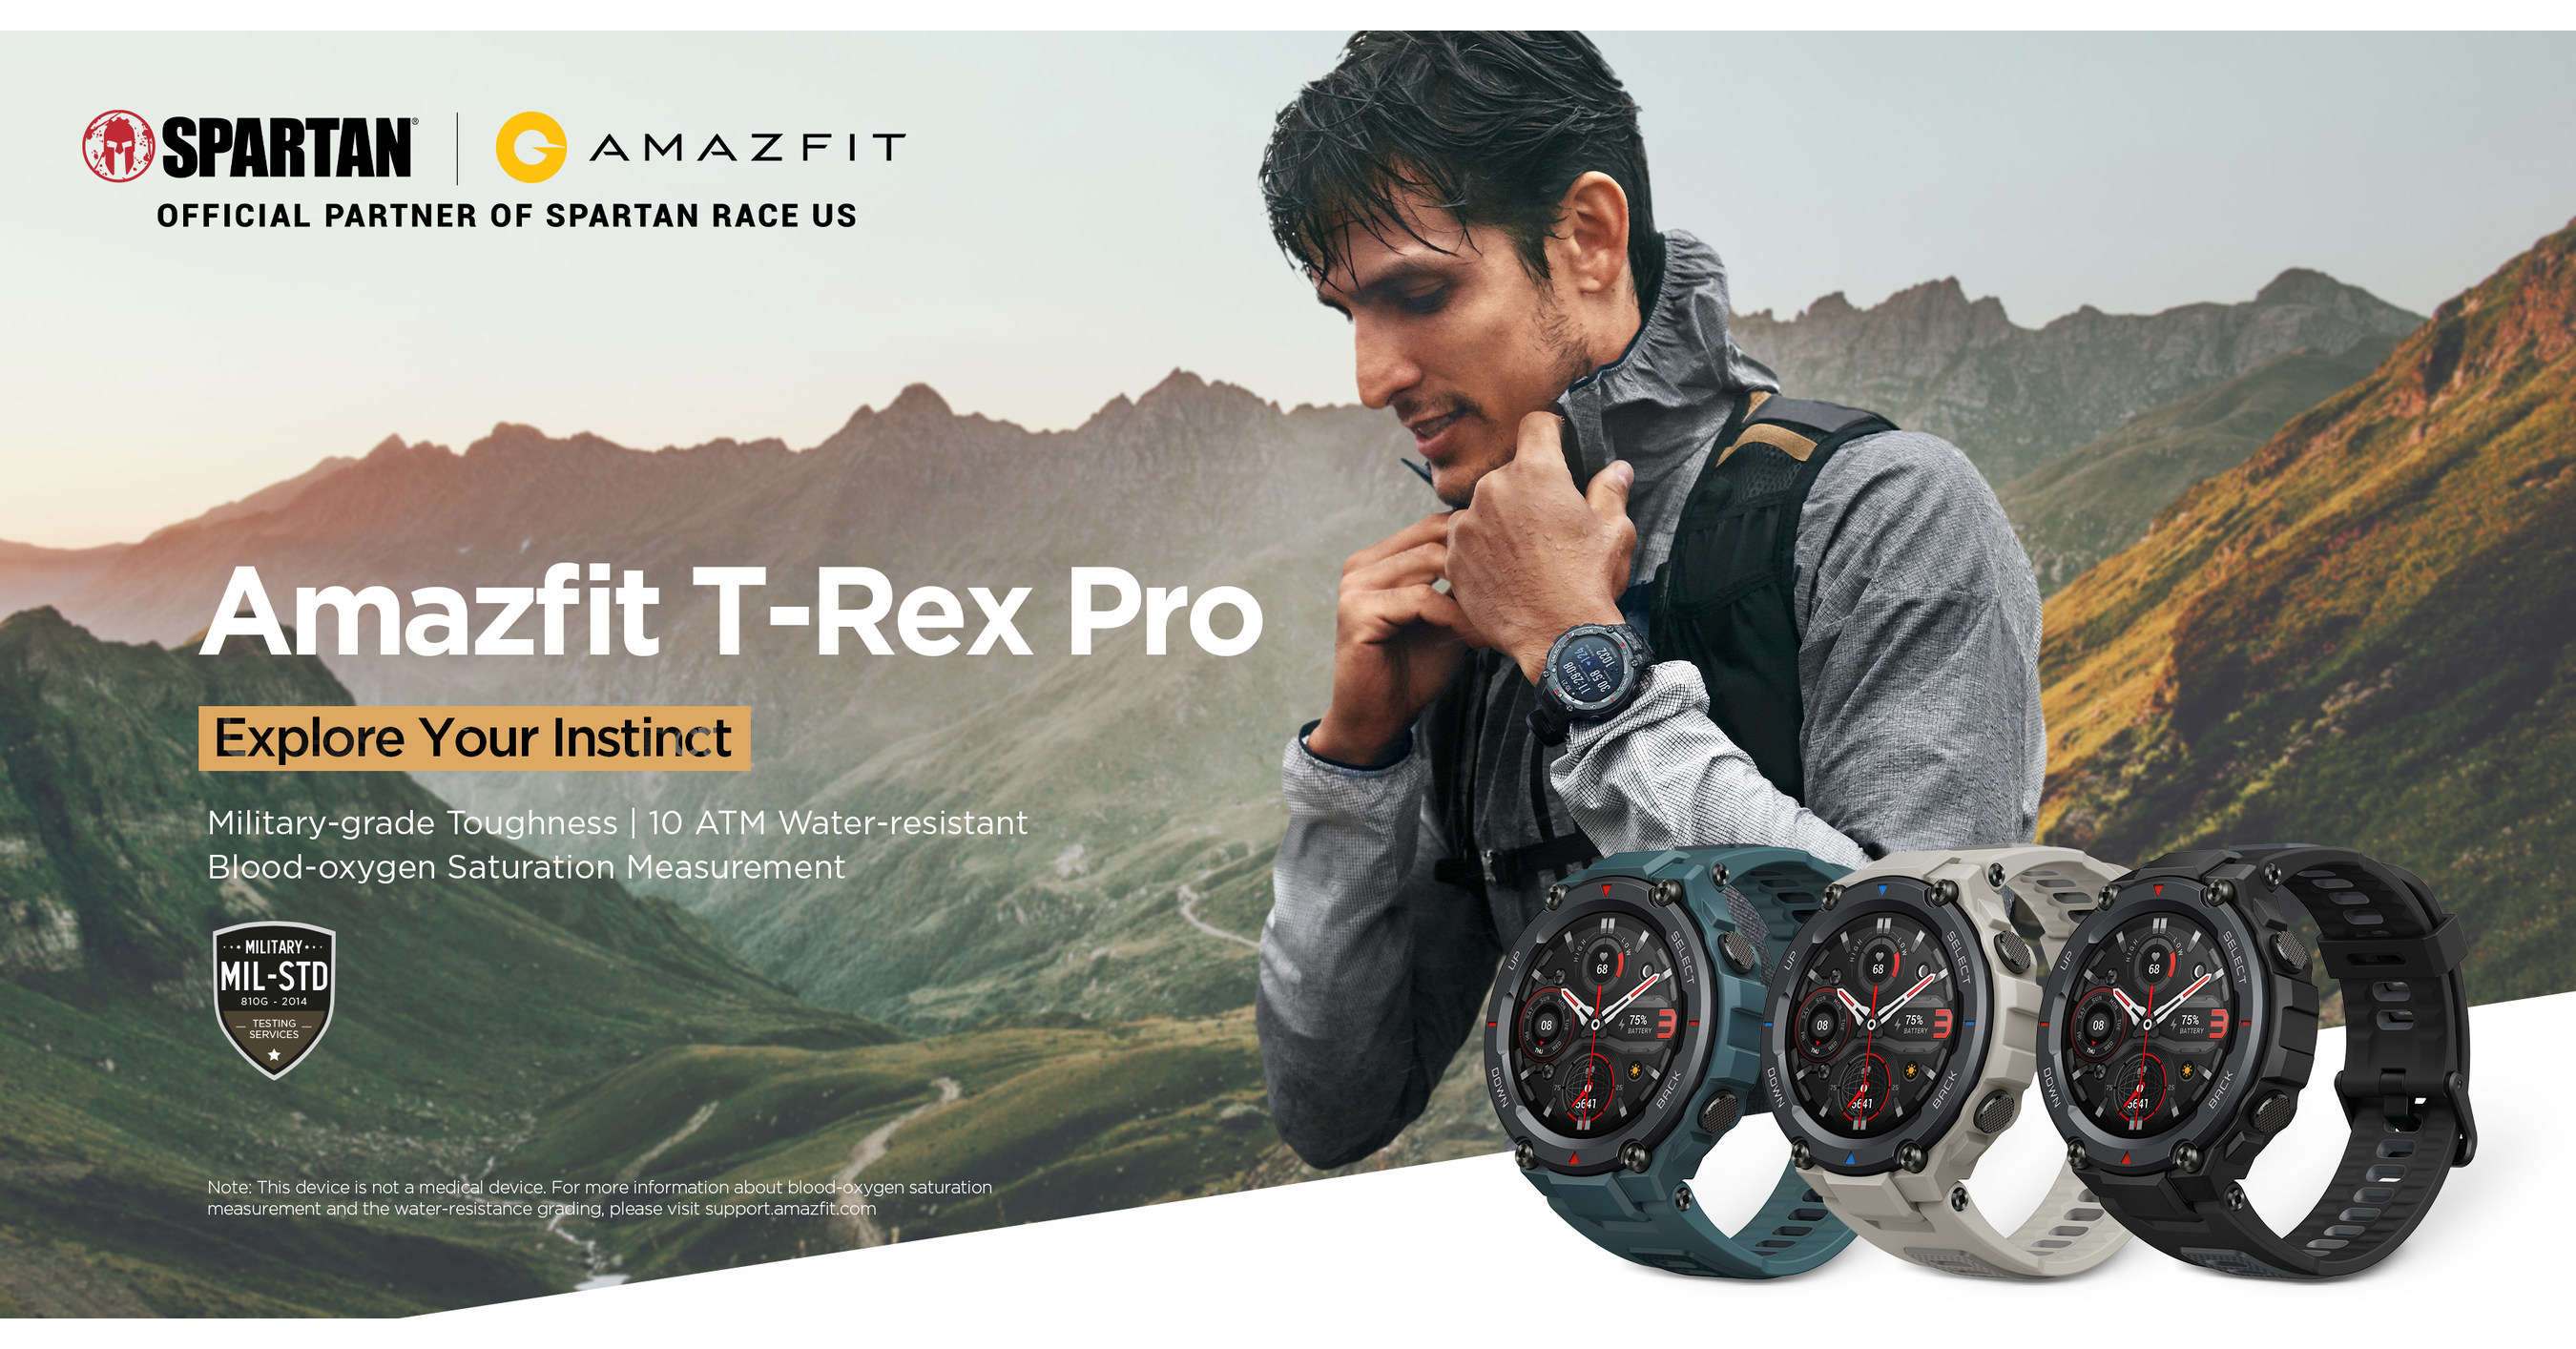 Amazfit T-Rex Pro: In pics